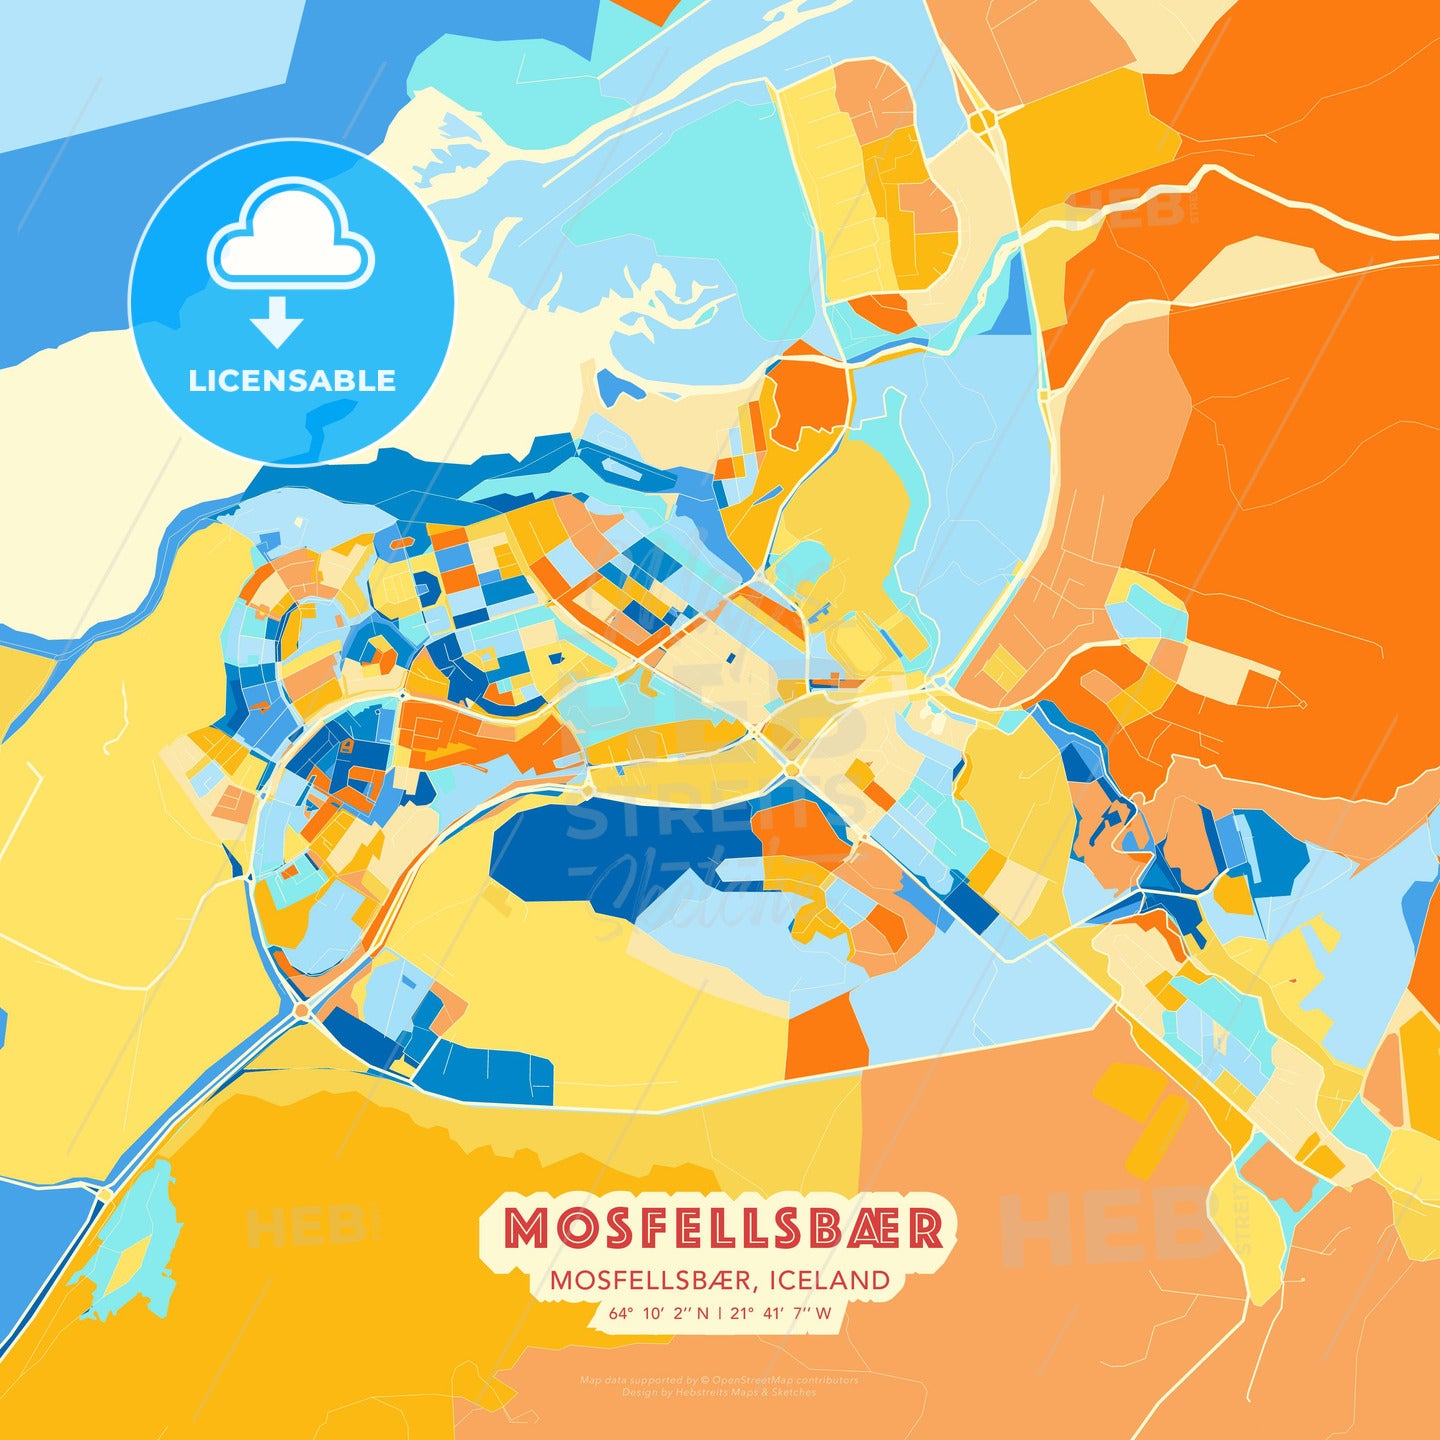 Mosfellsbær, Mosfellsbær, Iceland, map - HEBSTREITS Sketches